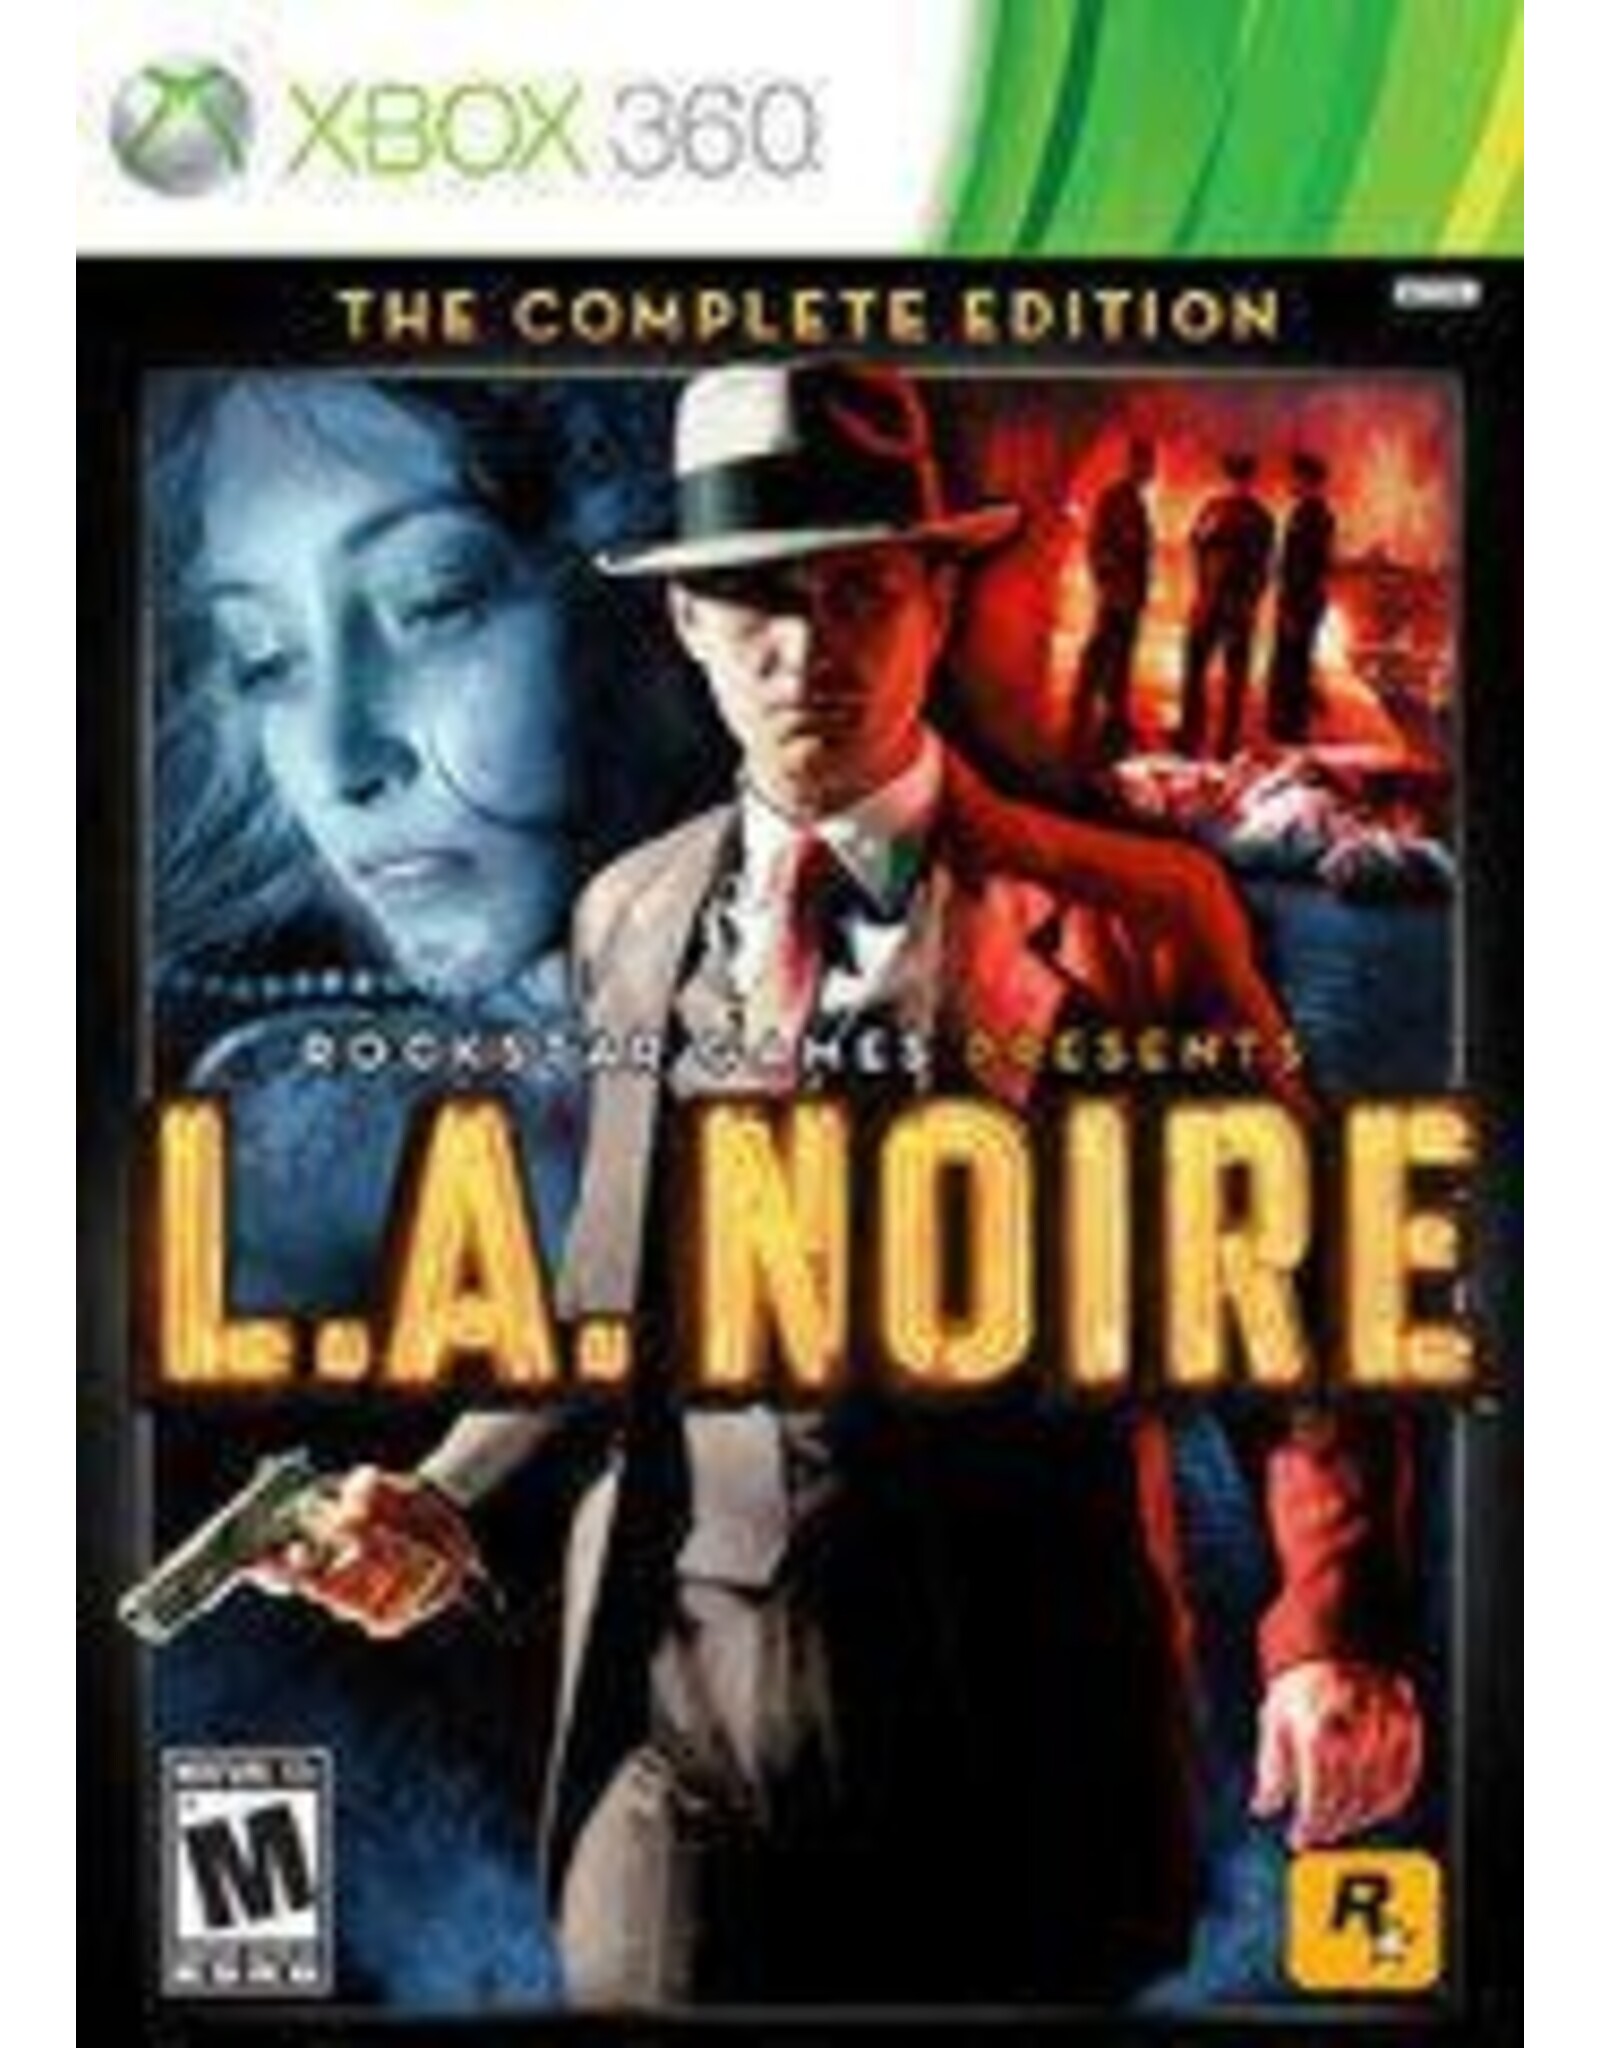 Xbox 360 L.A. Noire The Complete Edition (CiB)